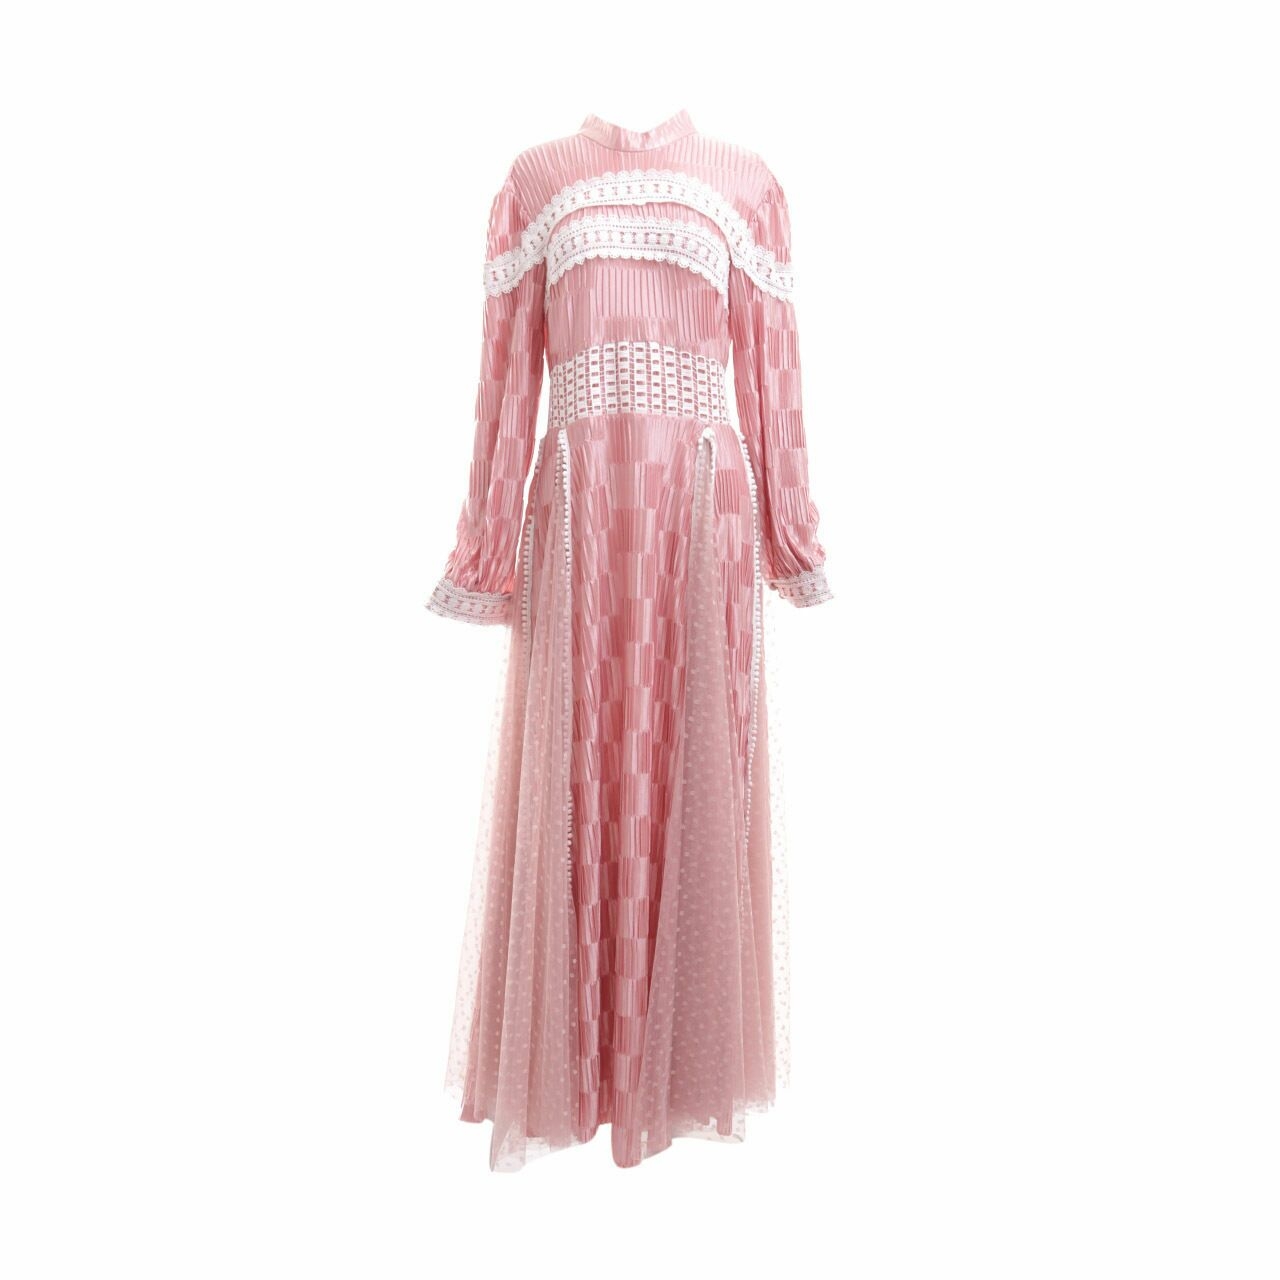 Barli Asmara Pink Tulle Long Dress